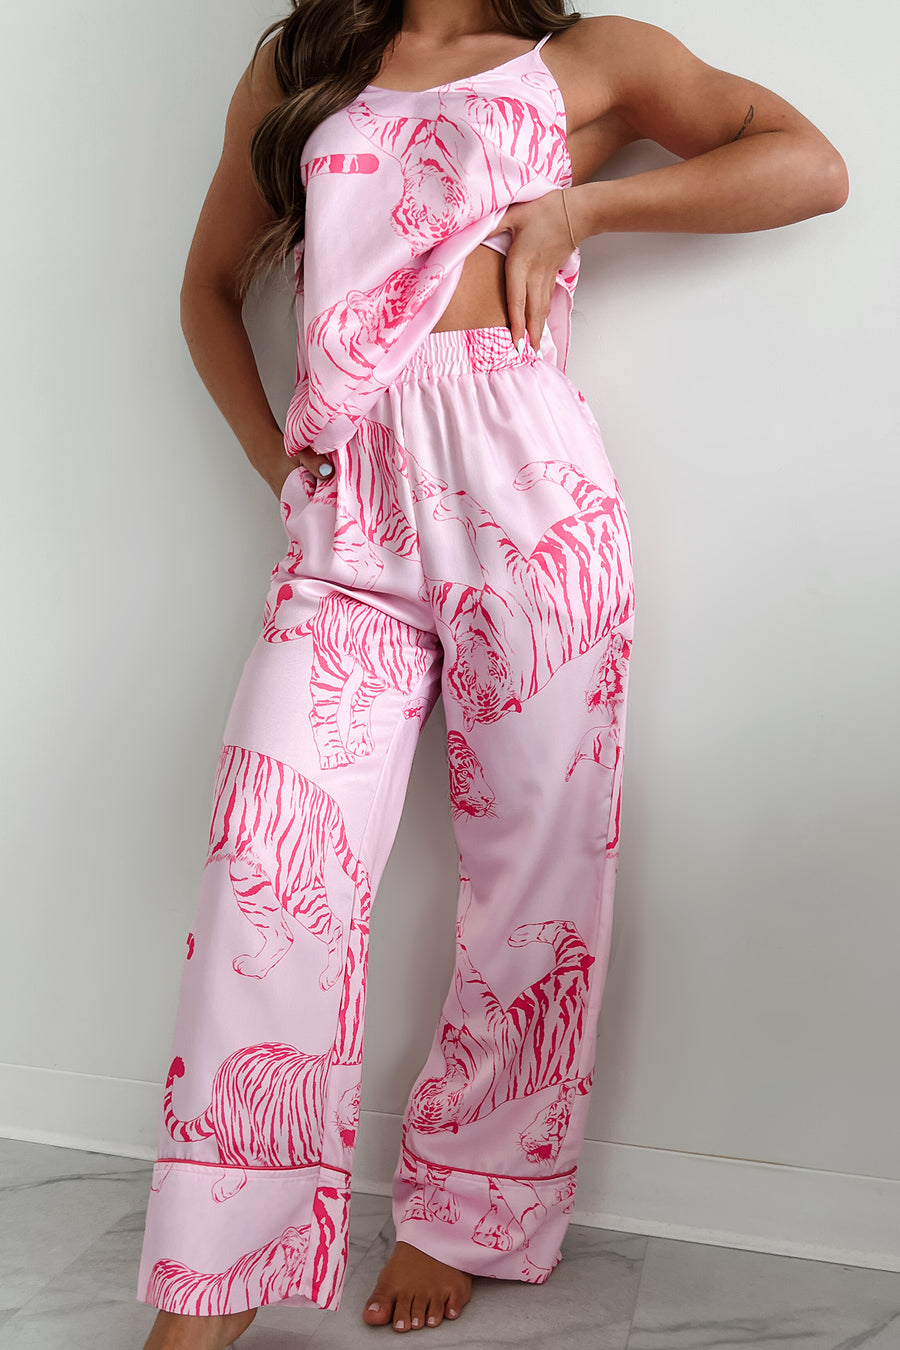 Feeling Catty Tiger Print Satin Pajama Set (Pink) - NanaMacs